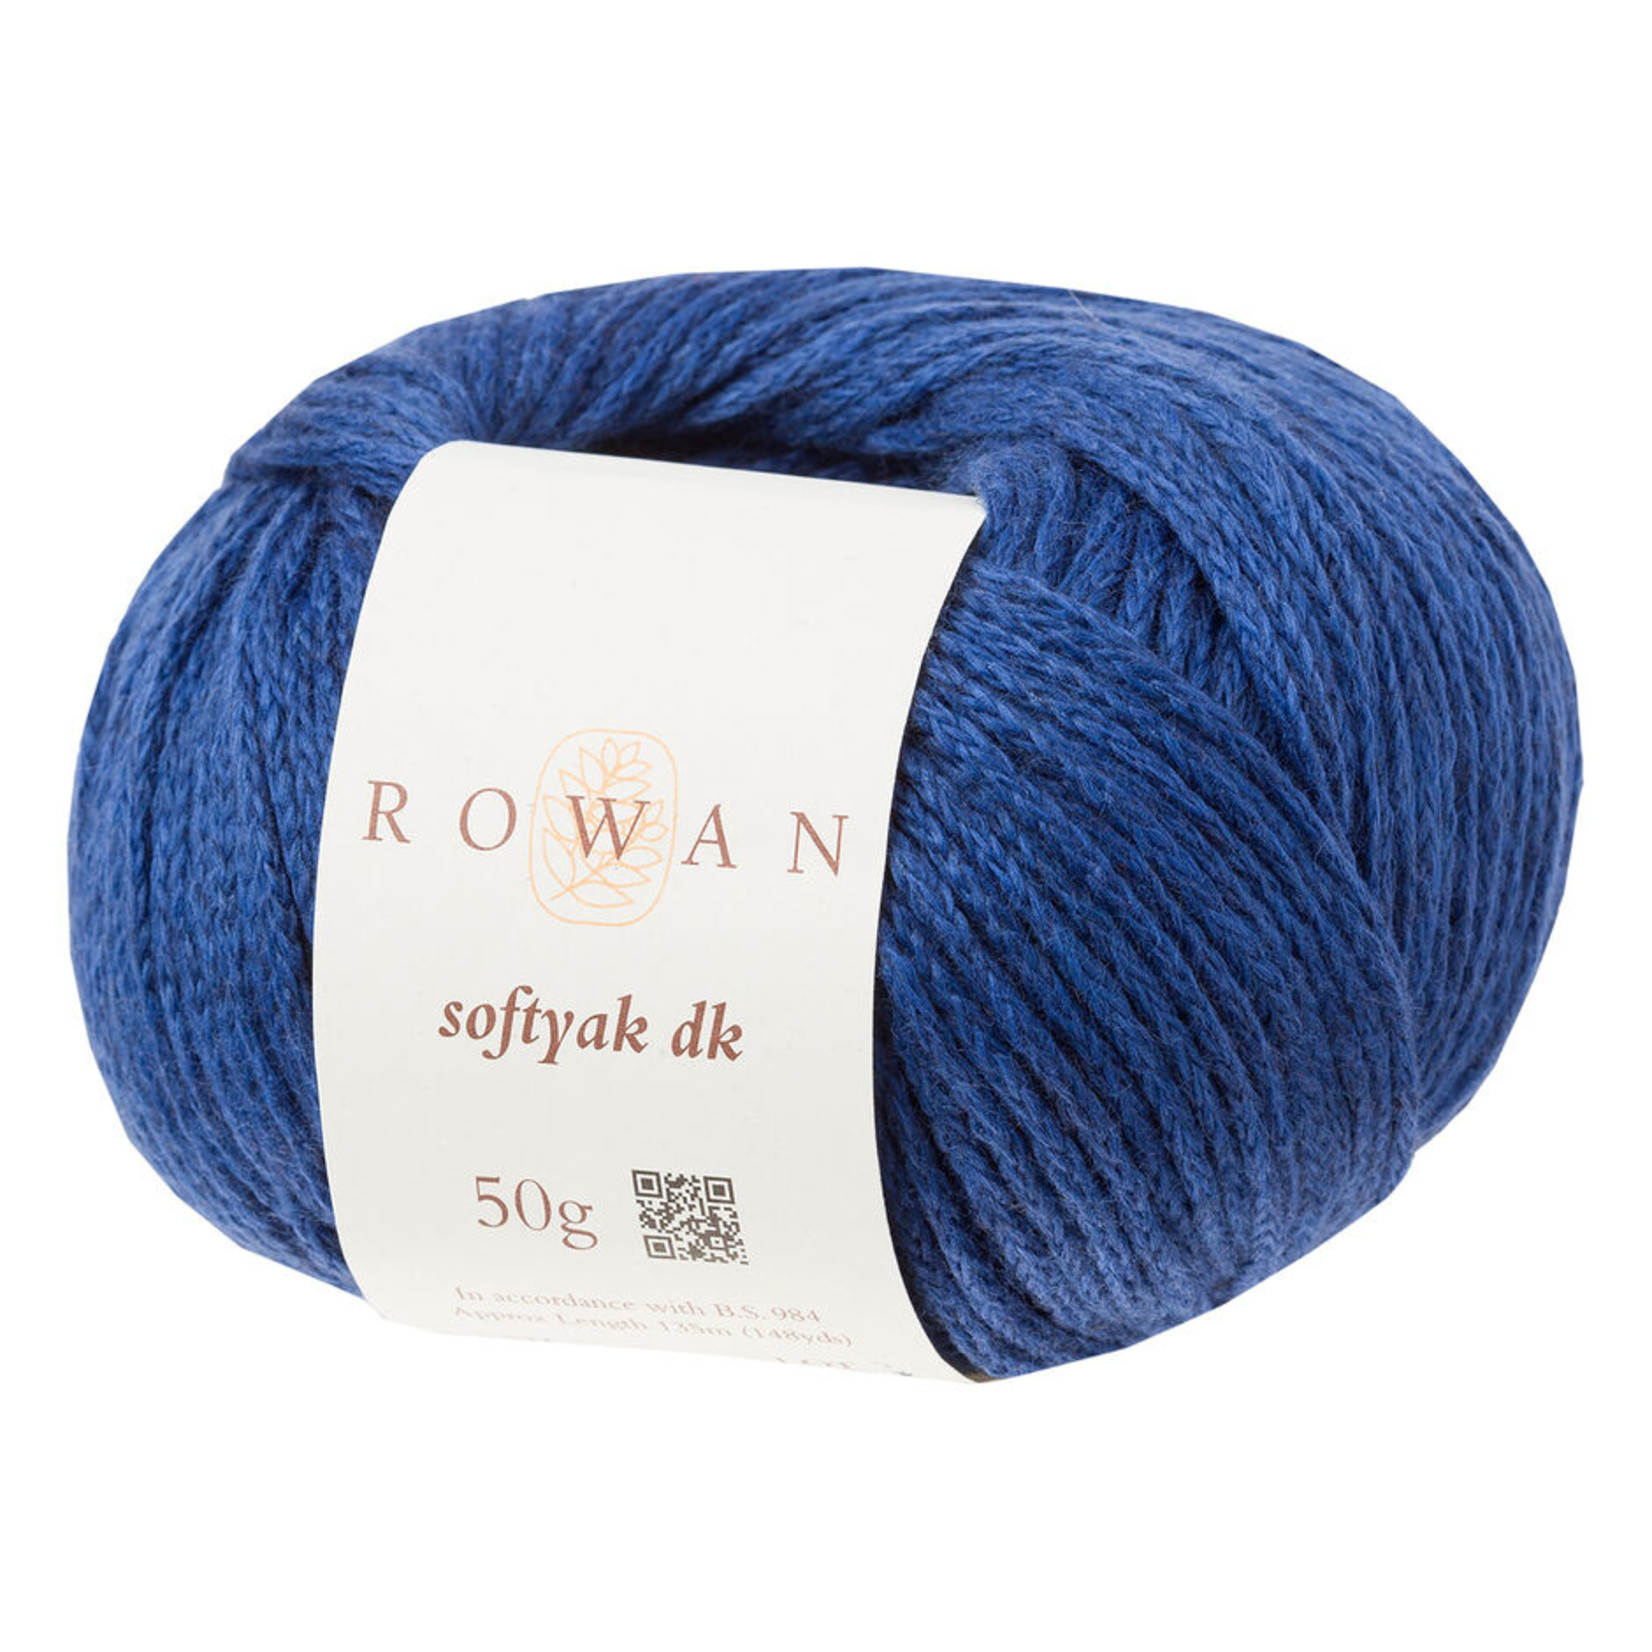 Rowan Rowan Softyak DK